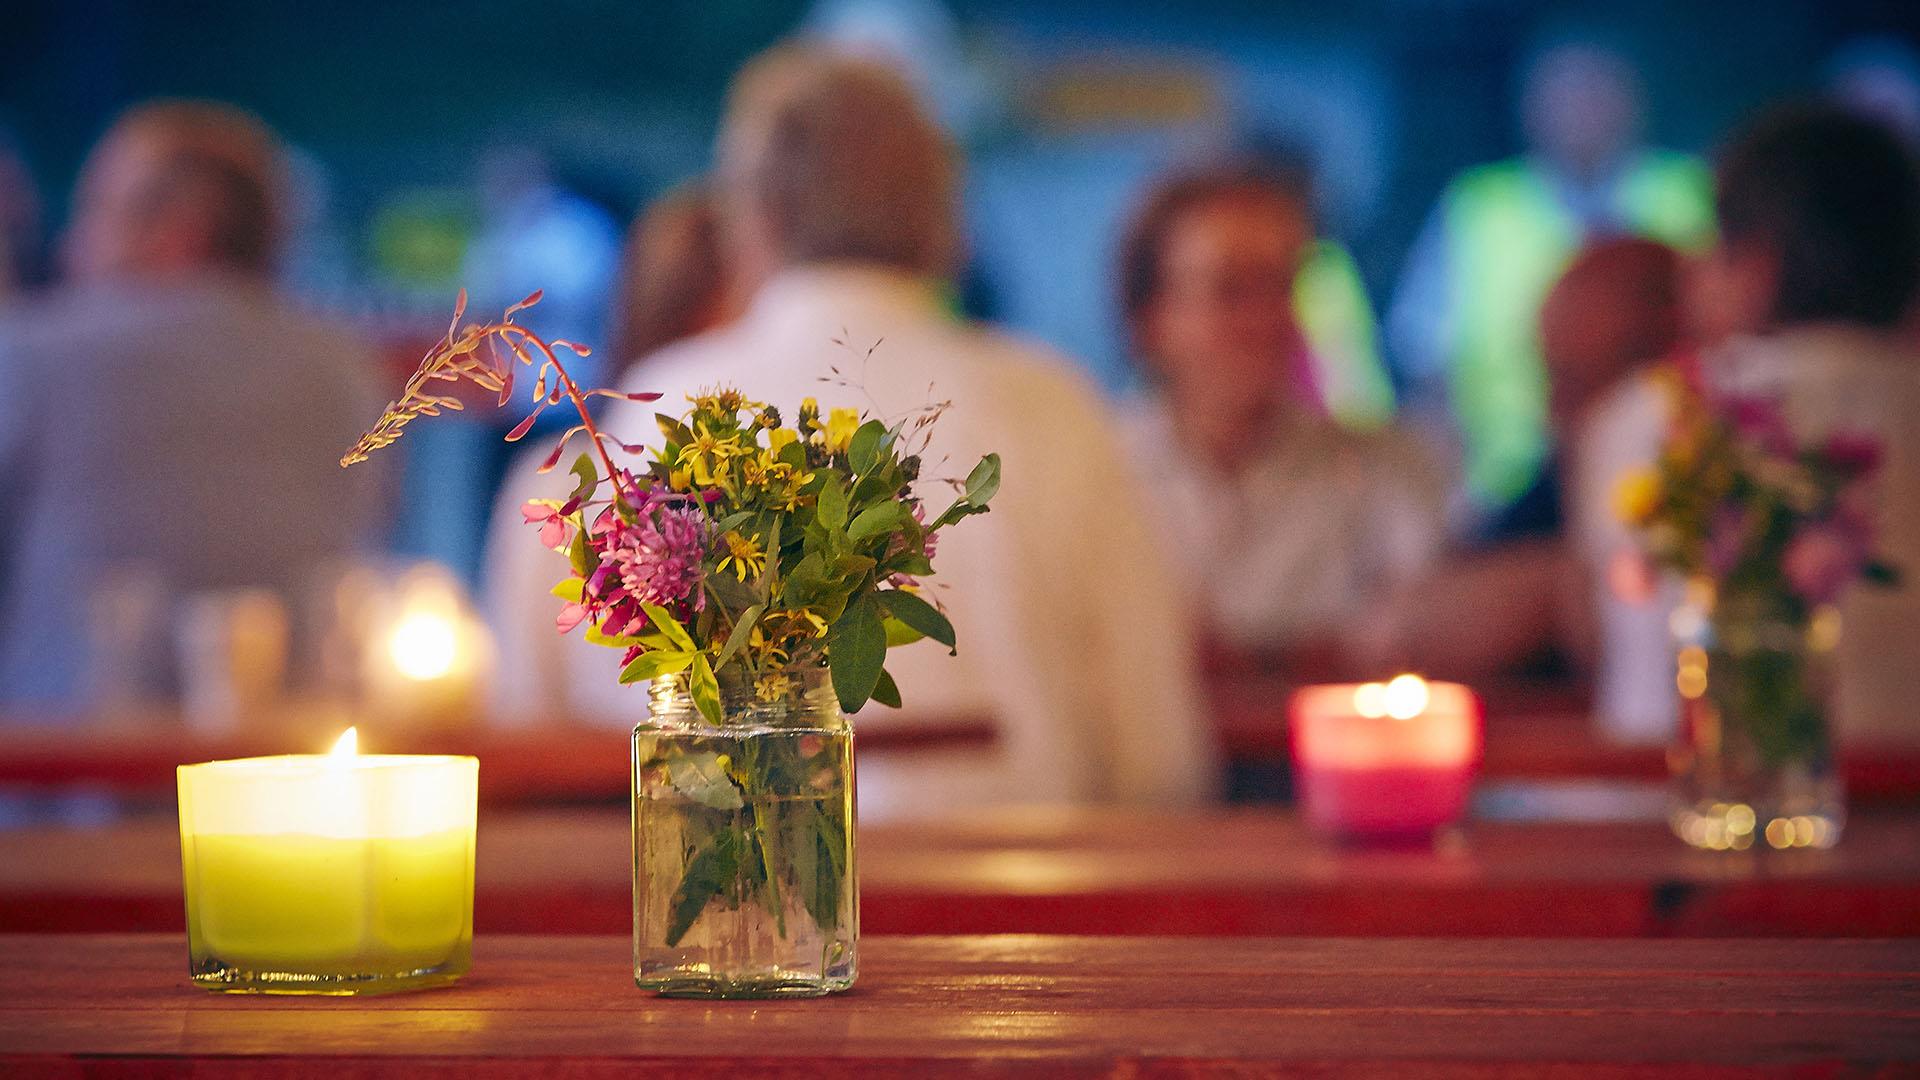 Wiesenblumen in einem Glas und Teelichter auf einem Tisch im Vordergrund an einem lauen Sommerabend, mit heiter gestimmten Leuten unscharf im Hintergrund.